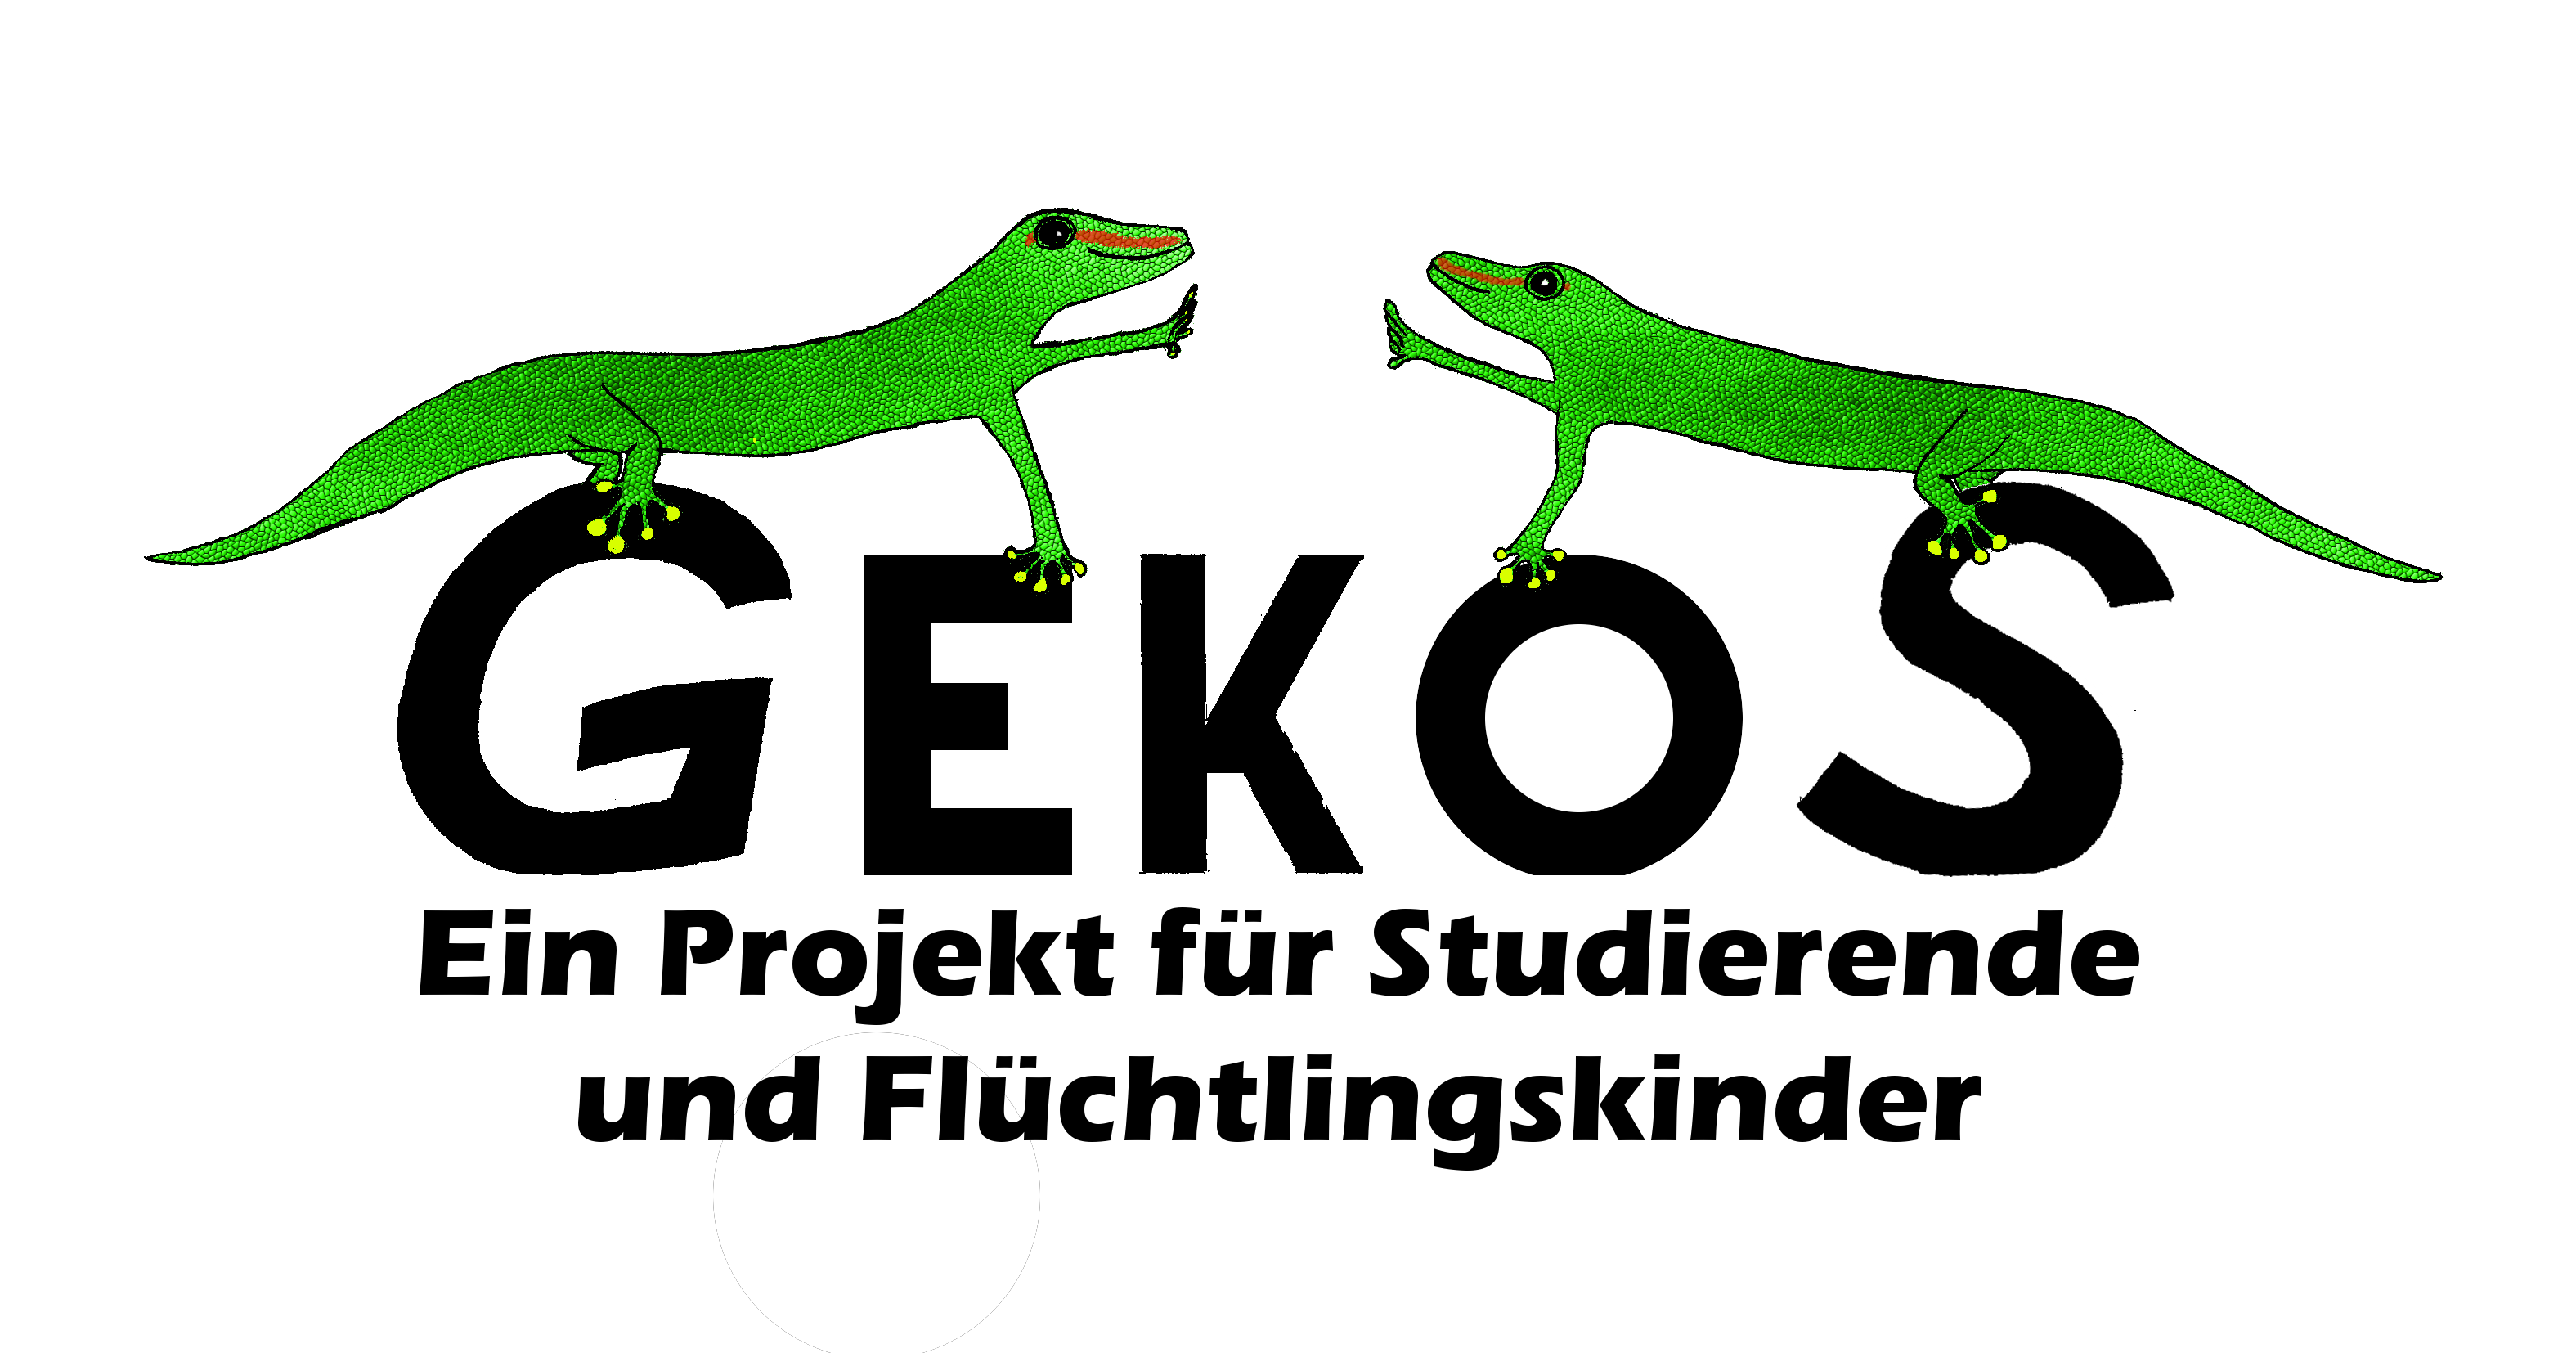 logo-gekos